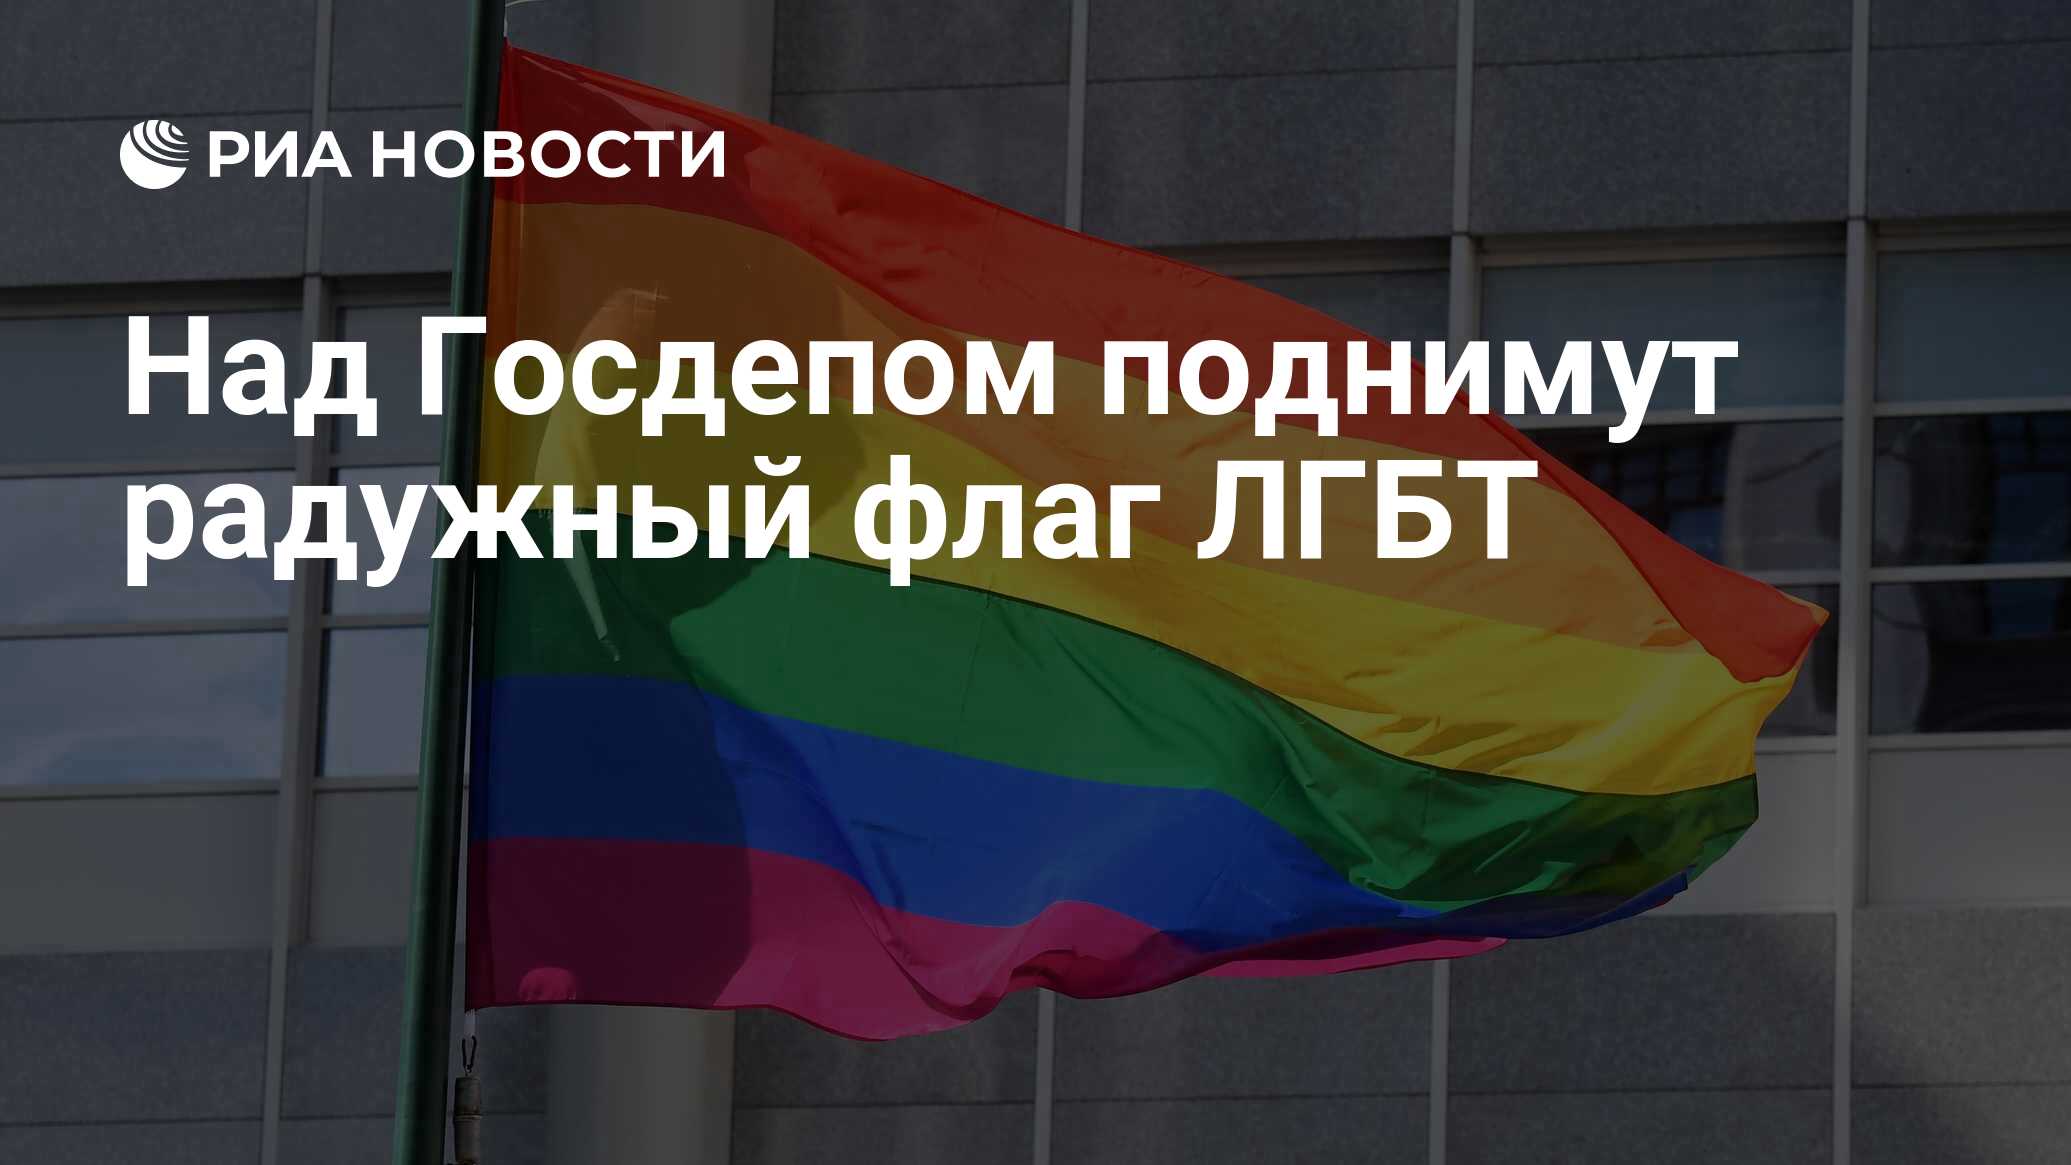 Над Госдепом поднимут радужный флаг ЛГБТ - РИА Новости, 22.06.2021